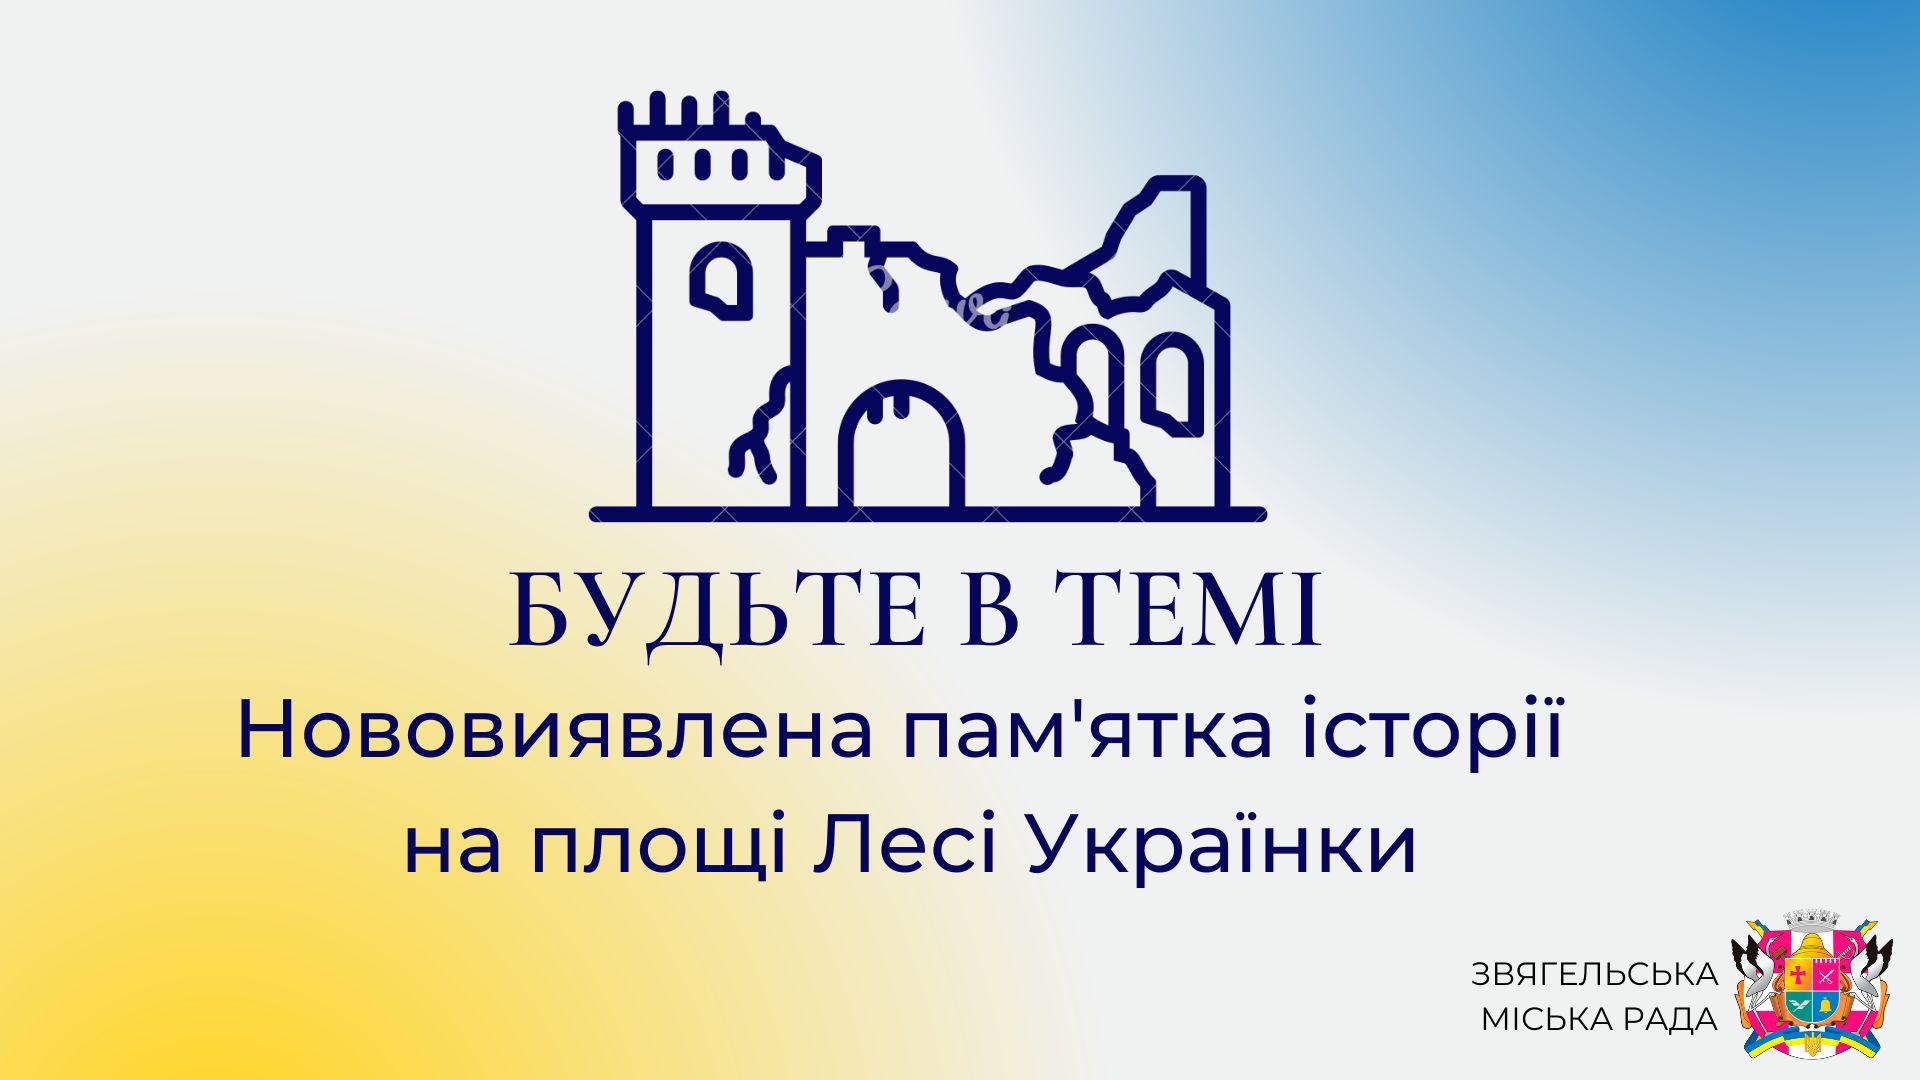 Анонс програми “Будьте в темі: Нововиявлена пам’ятка історії на площі Лесі Українки”